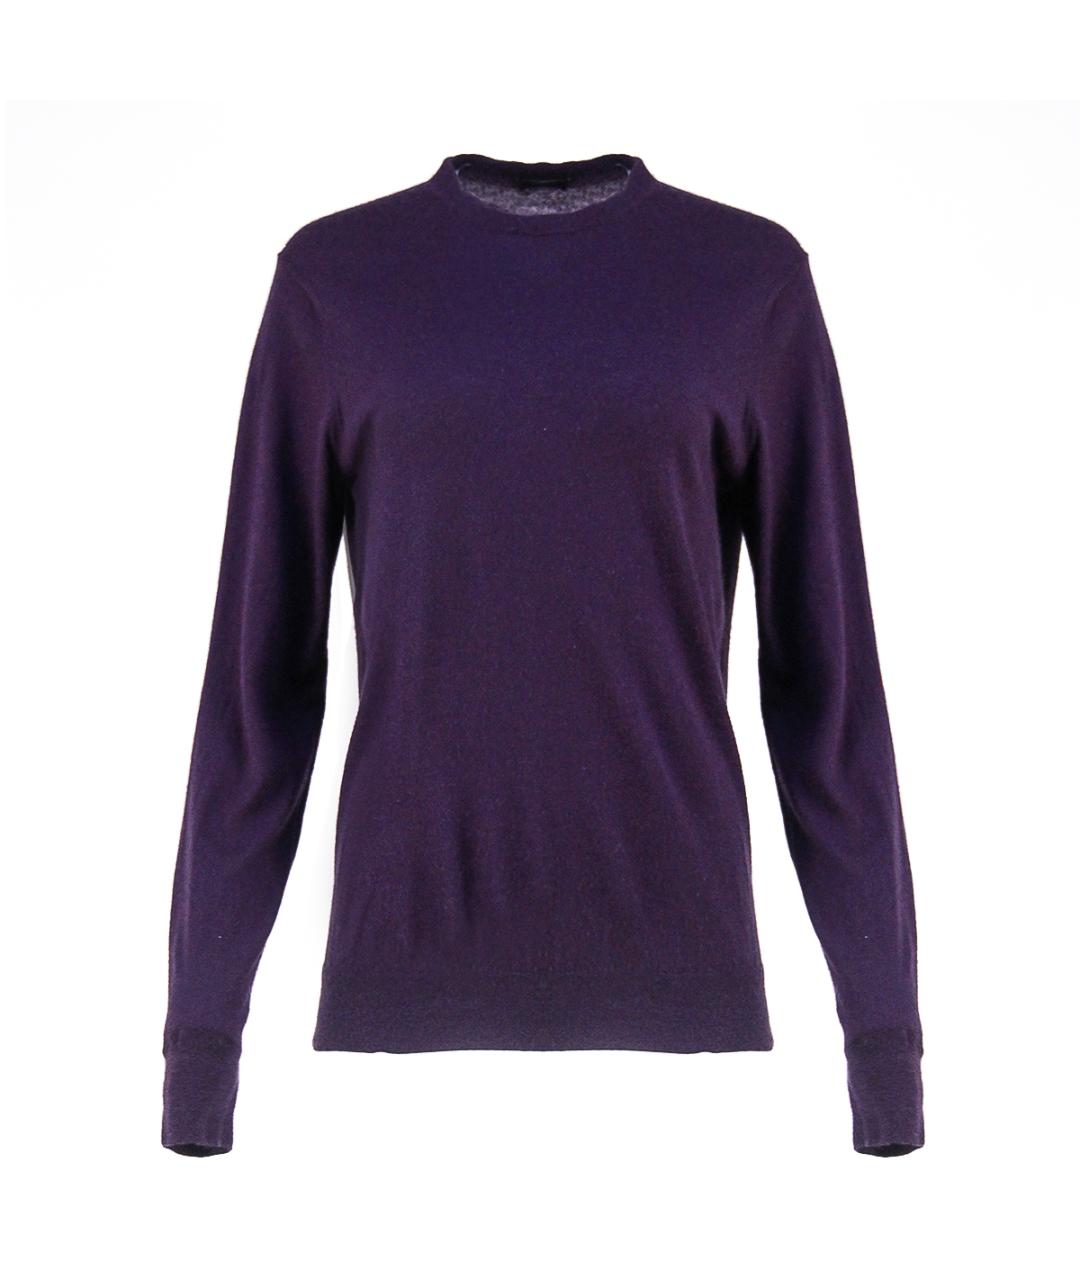 RE VERA Фиолетовый кашемировый джемпер / свитер, фото 1